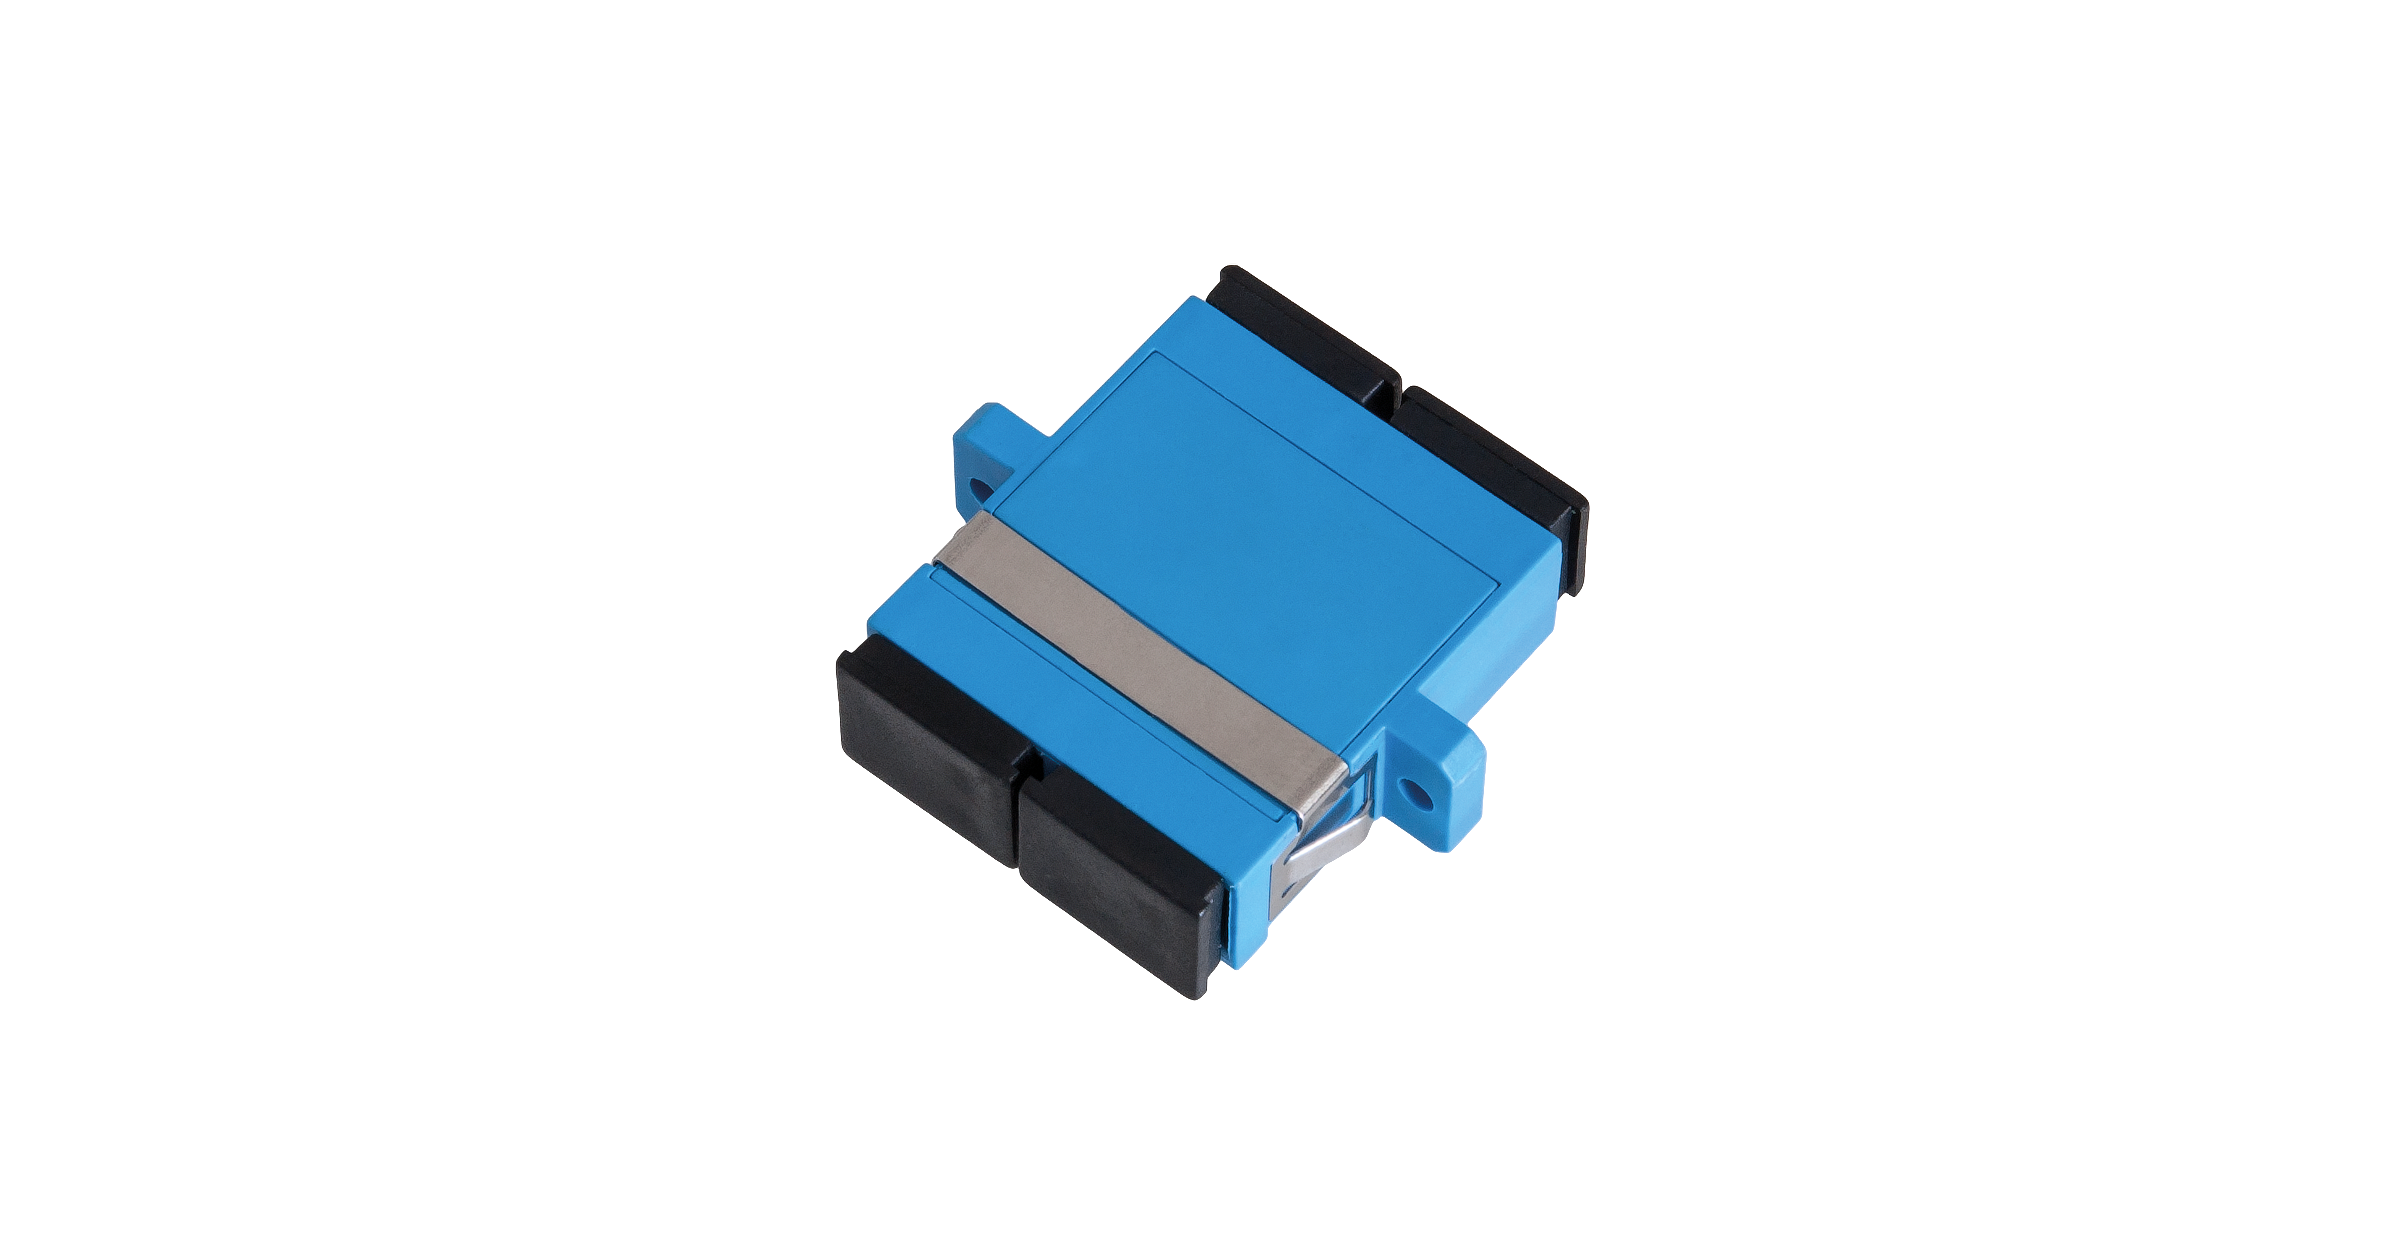 Адаптер NIKOMAX волоконно-оптический, соединительный, одномодовый, SC/UPC-SC/UPC, двойной, пластиковый, синий, уп-ка 2шт.